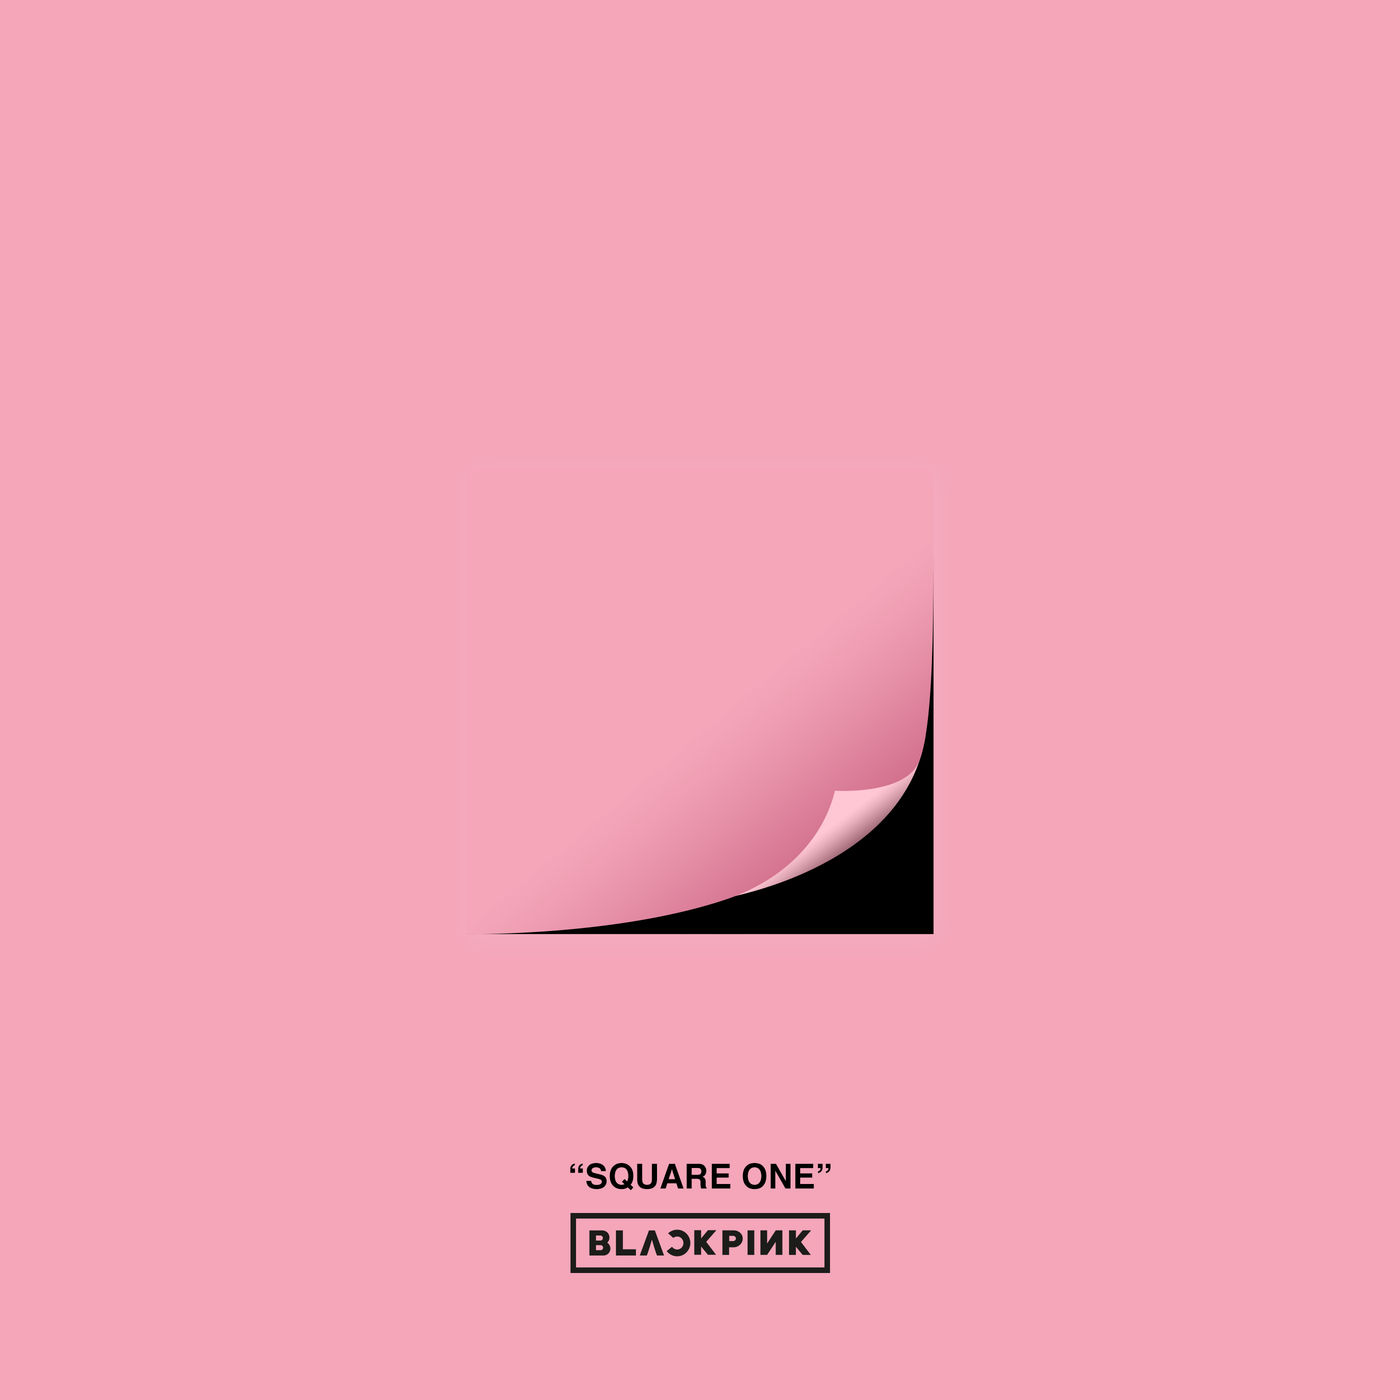 دانلود آلبوم BLACKPINK به نام SQUARE ONE (2016) با کیفیت FLAC 🔥